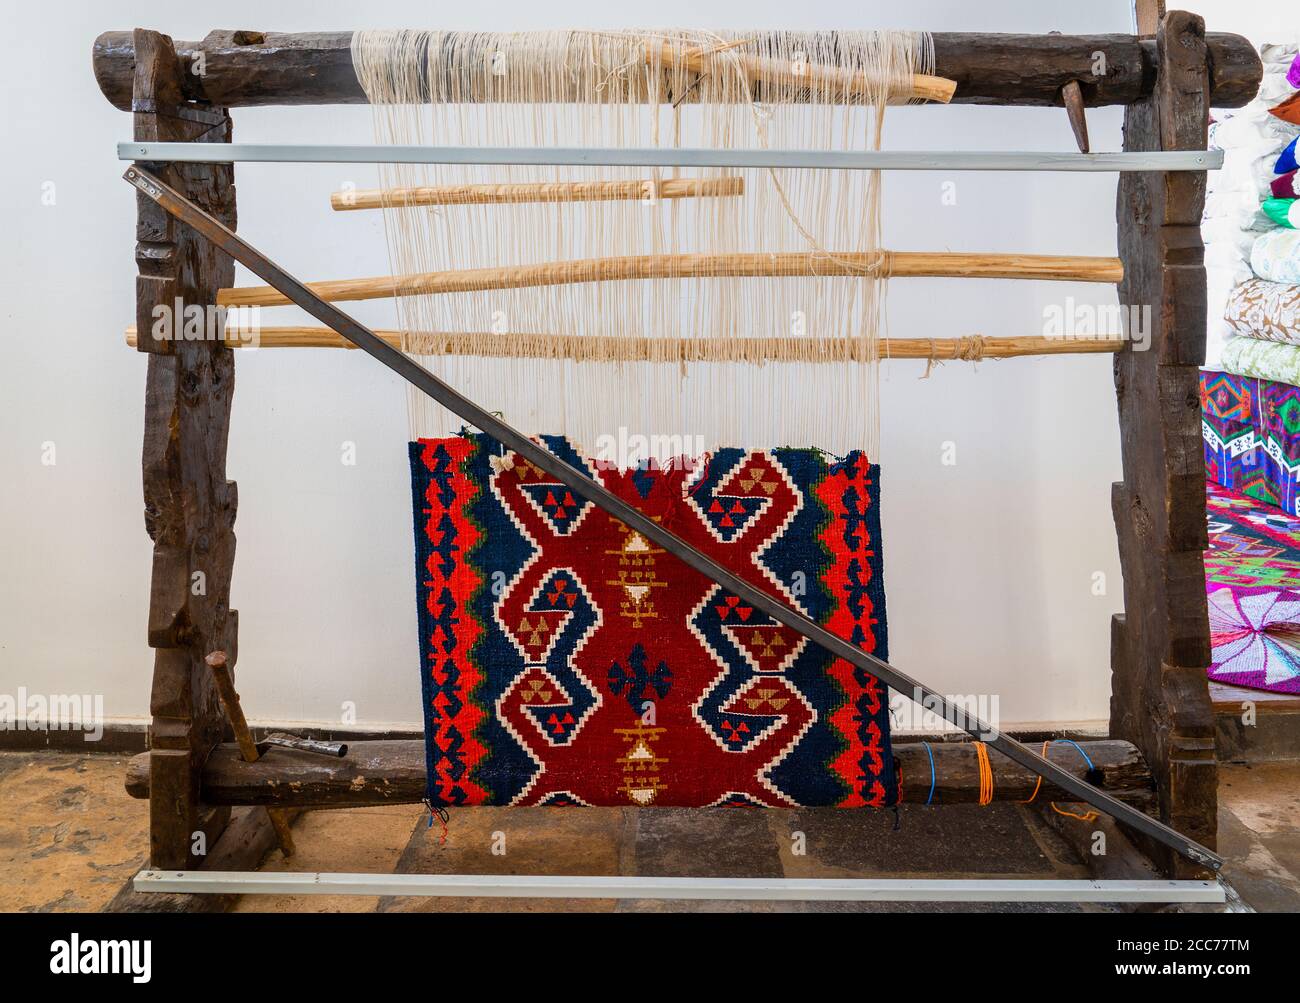 Détail du vieux métier à tisser turc pour la fabrication de tapis et de  tapis. Turquie Photo Stock - Alamy